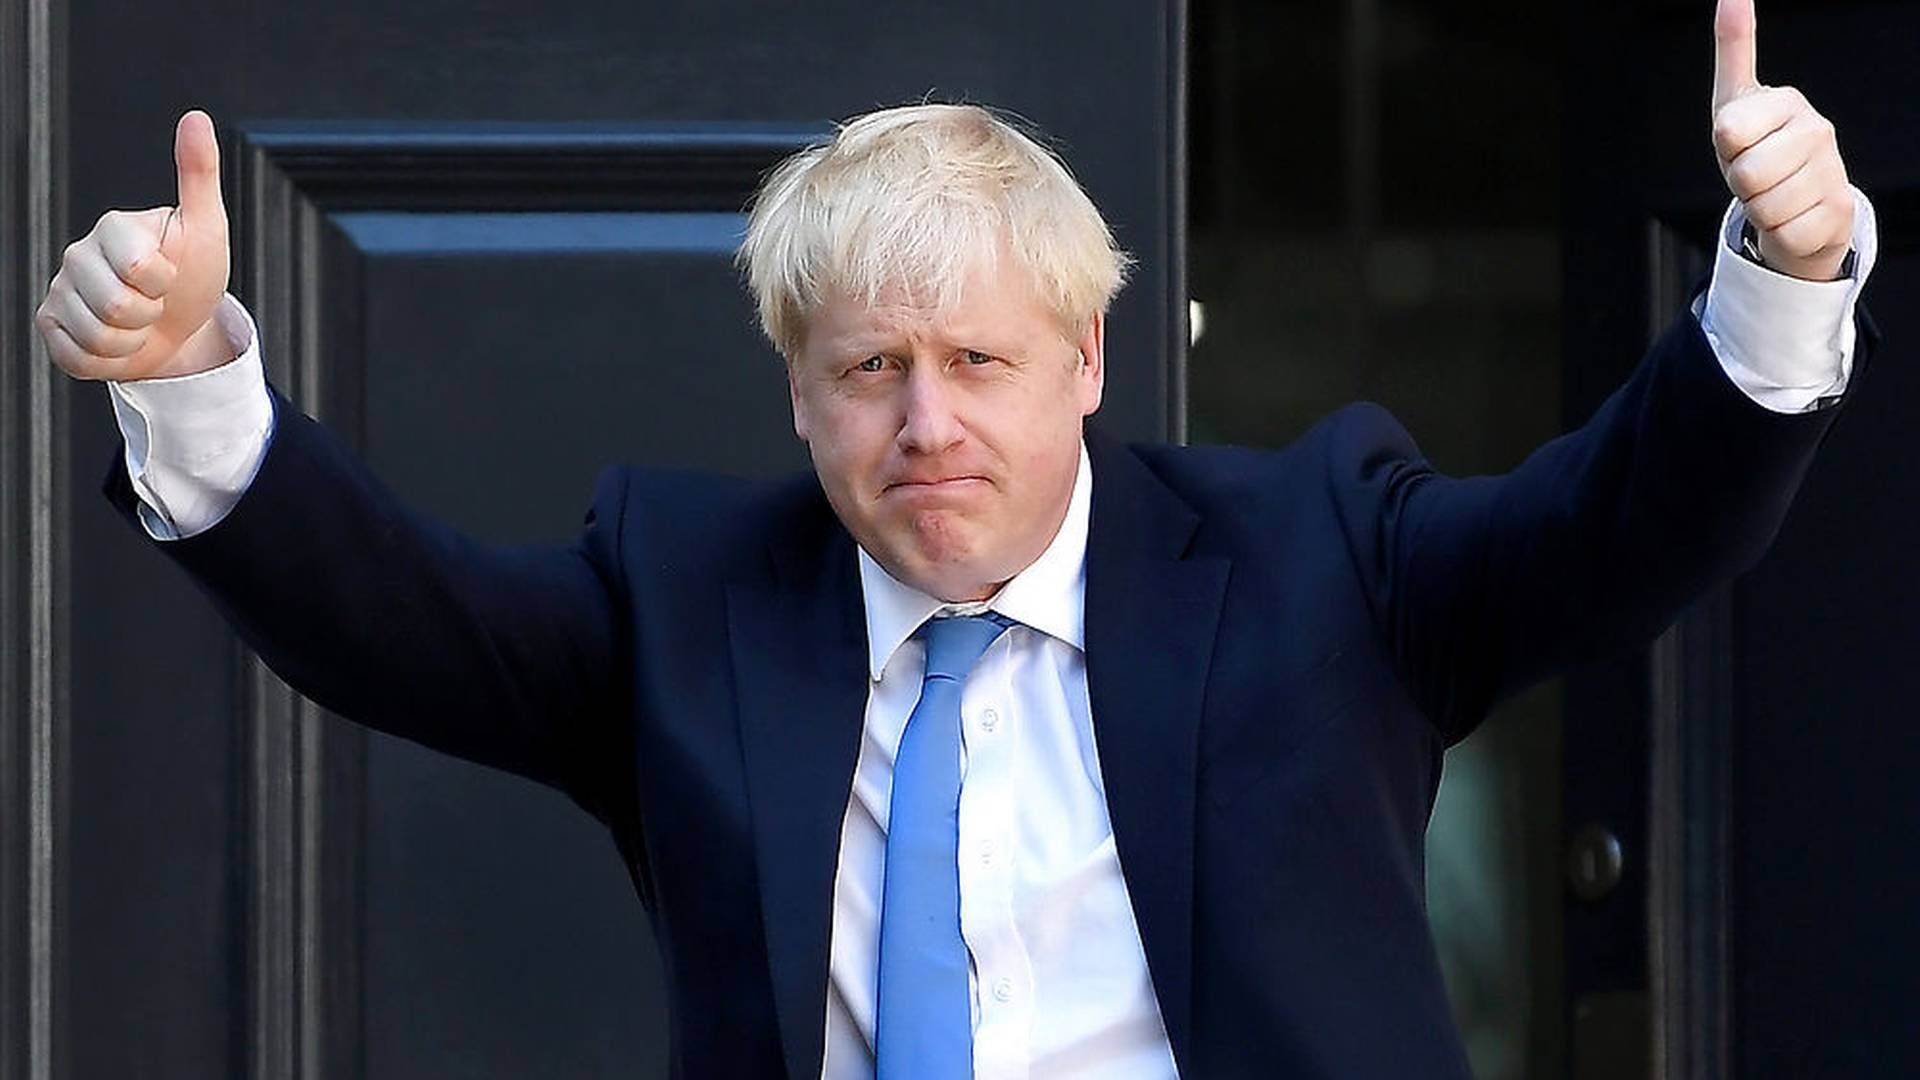 Boris Johnson blev i går valgt som ny leder af det konservative parti i Storbritannien. Han bliver samtidig ny premierminister. | Foto: Toby Melville / Reuters / Ritzau Scanpix